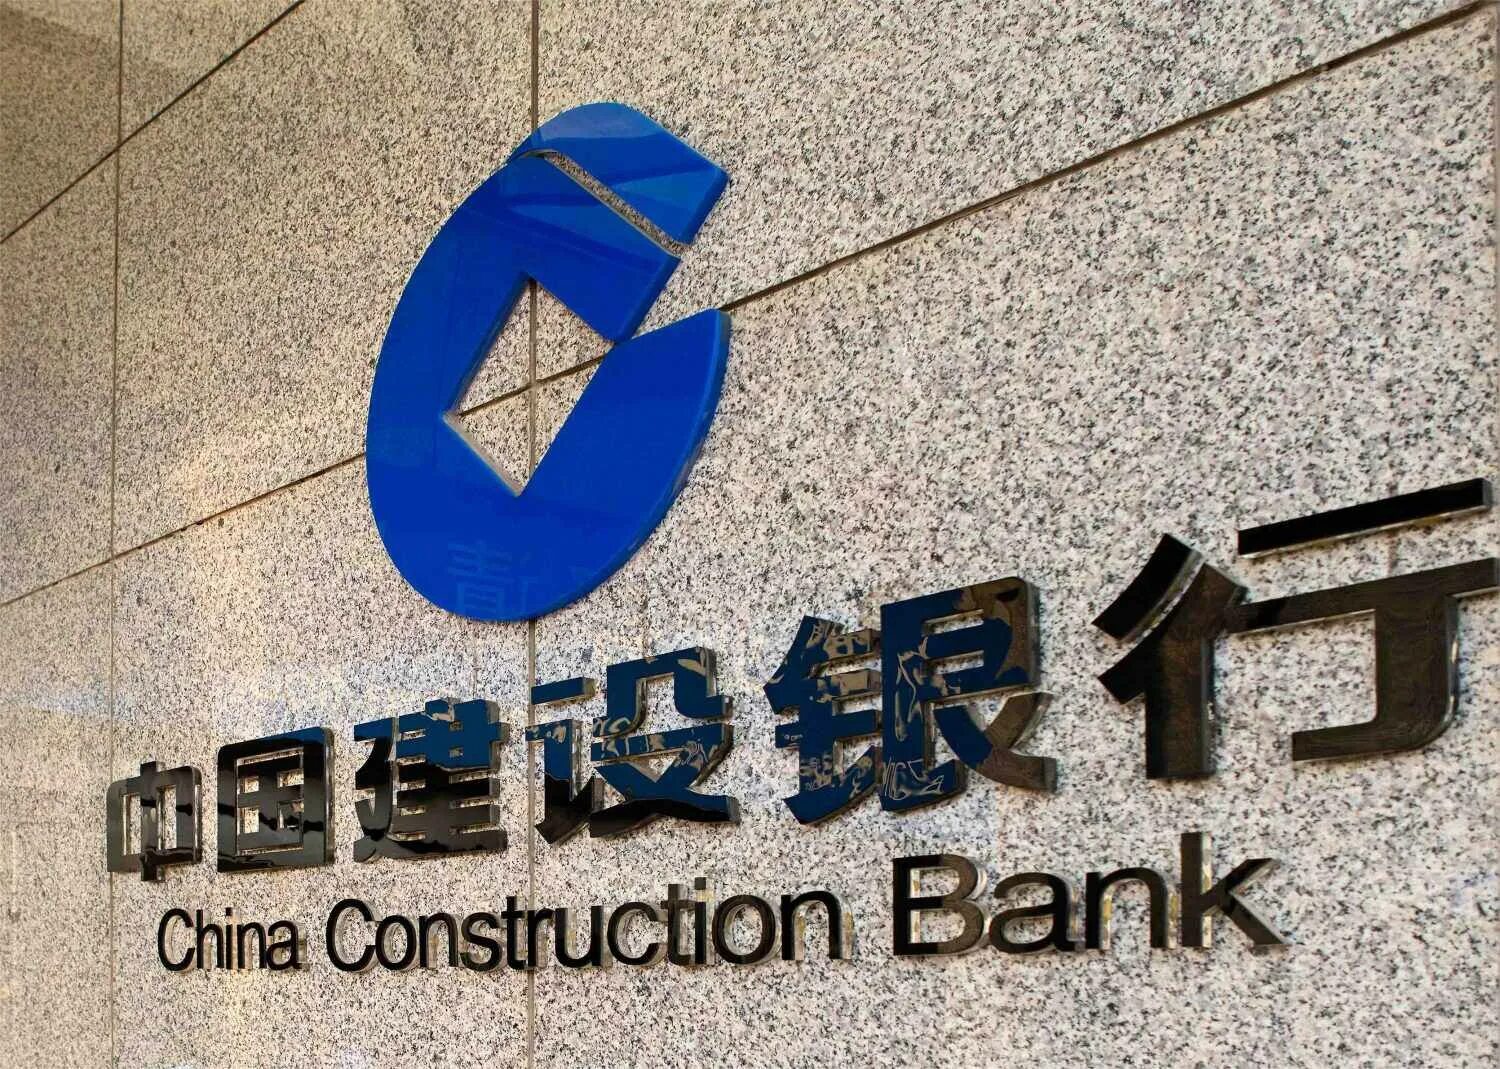 Чайна Констракшн банк. Строительный банк Китая China Construction Bank CCB. China Construction Bank (ССВ) ("строительный банк Китая"). China Construction Bank лого.